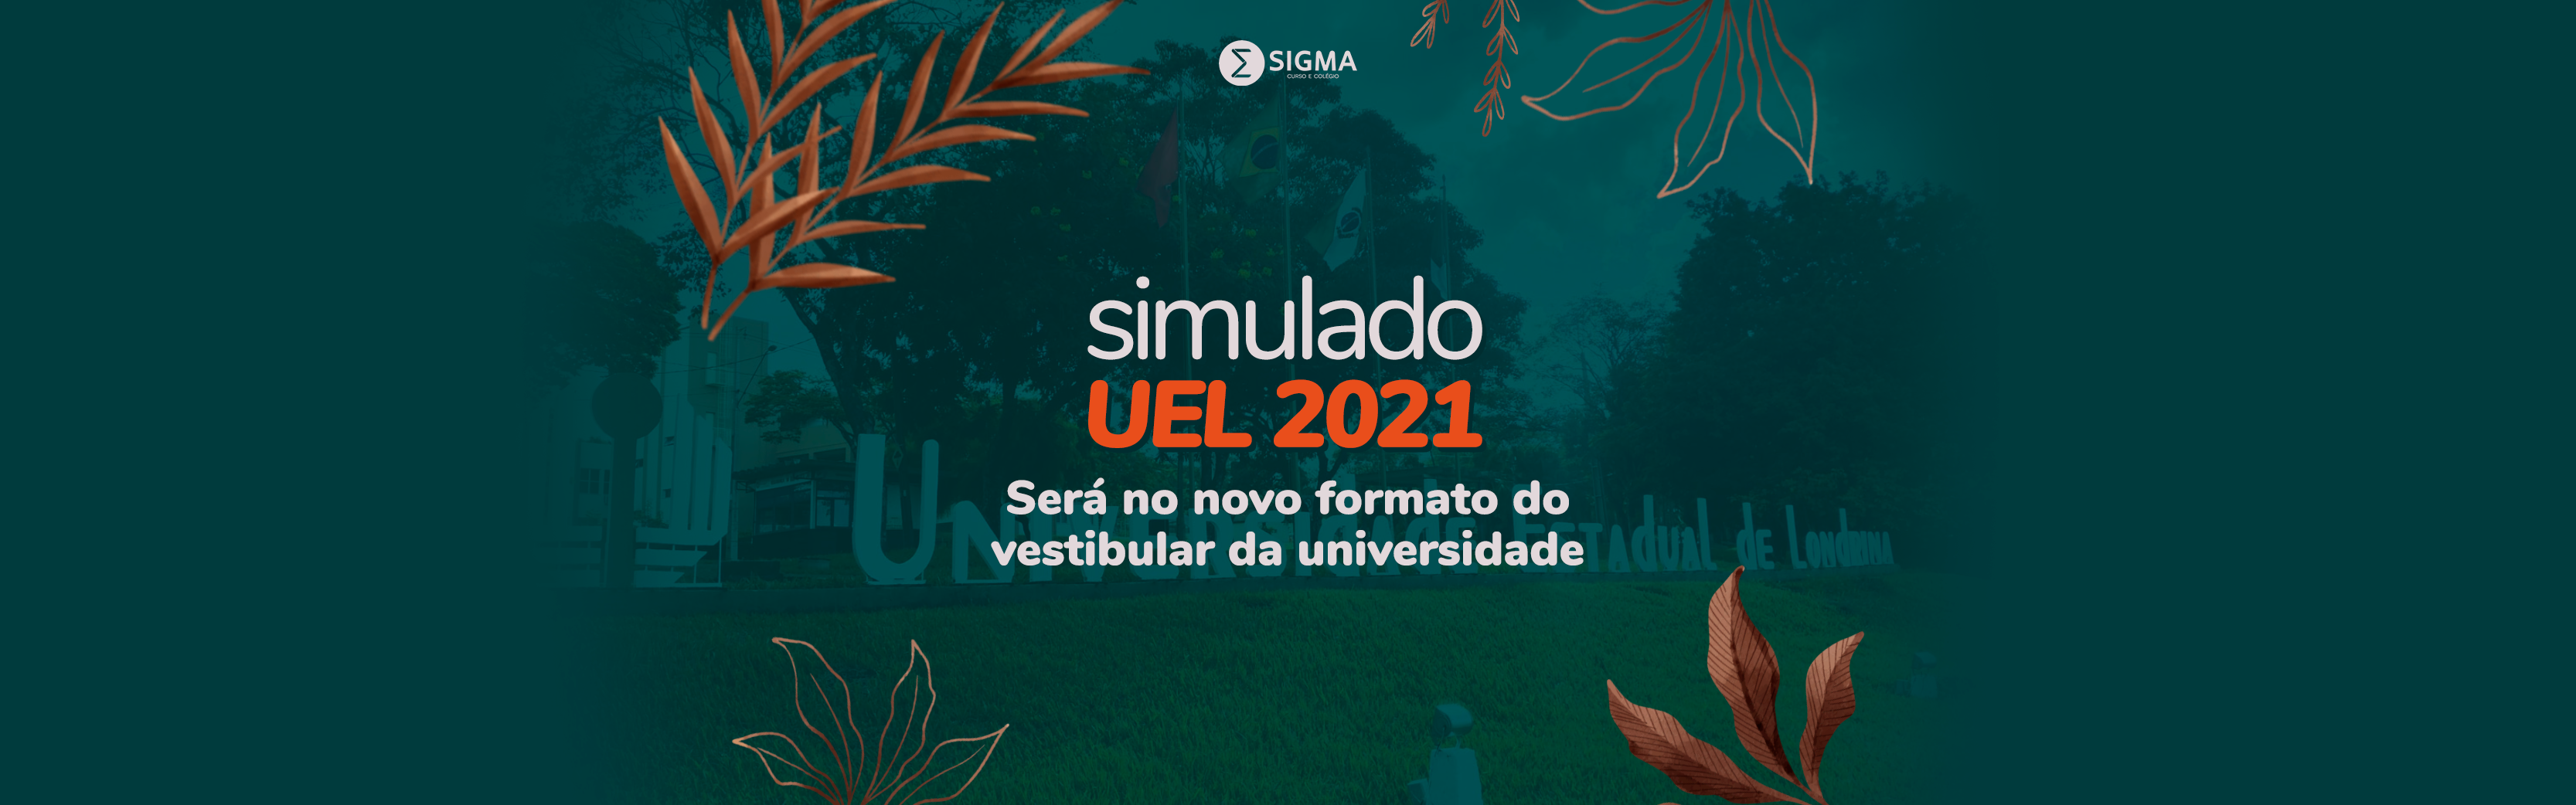 Simulado UEL 2021 Sigma será no novo formato do vestibular da universidade